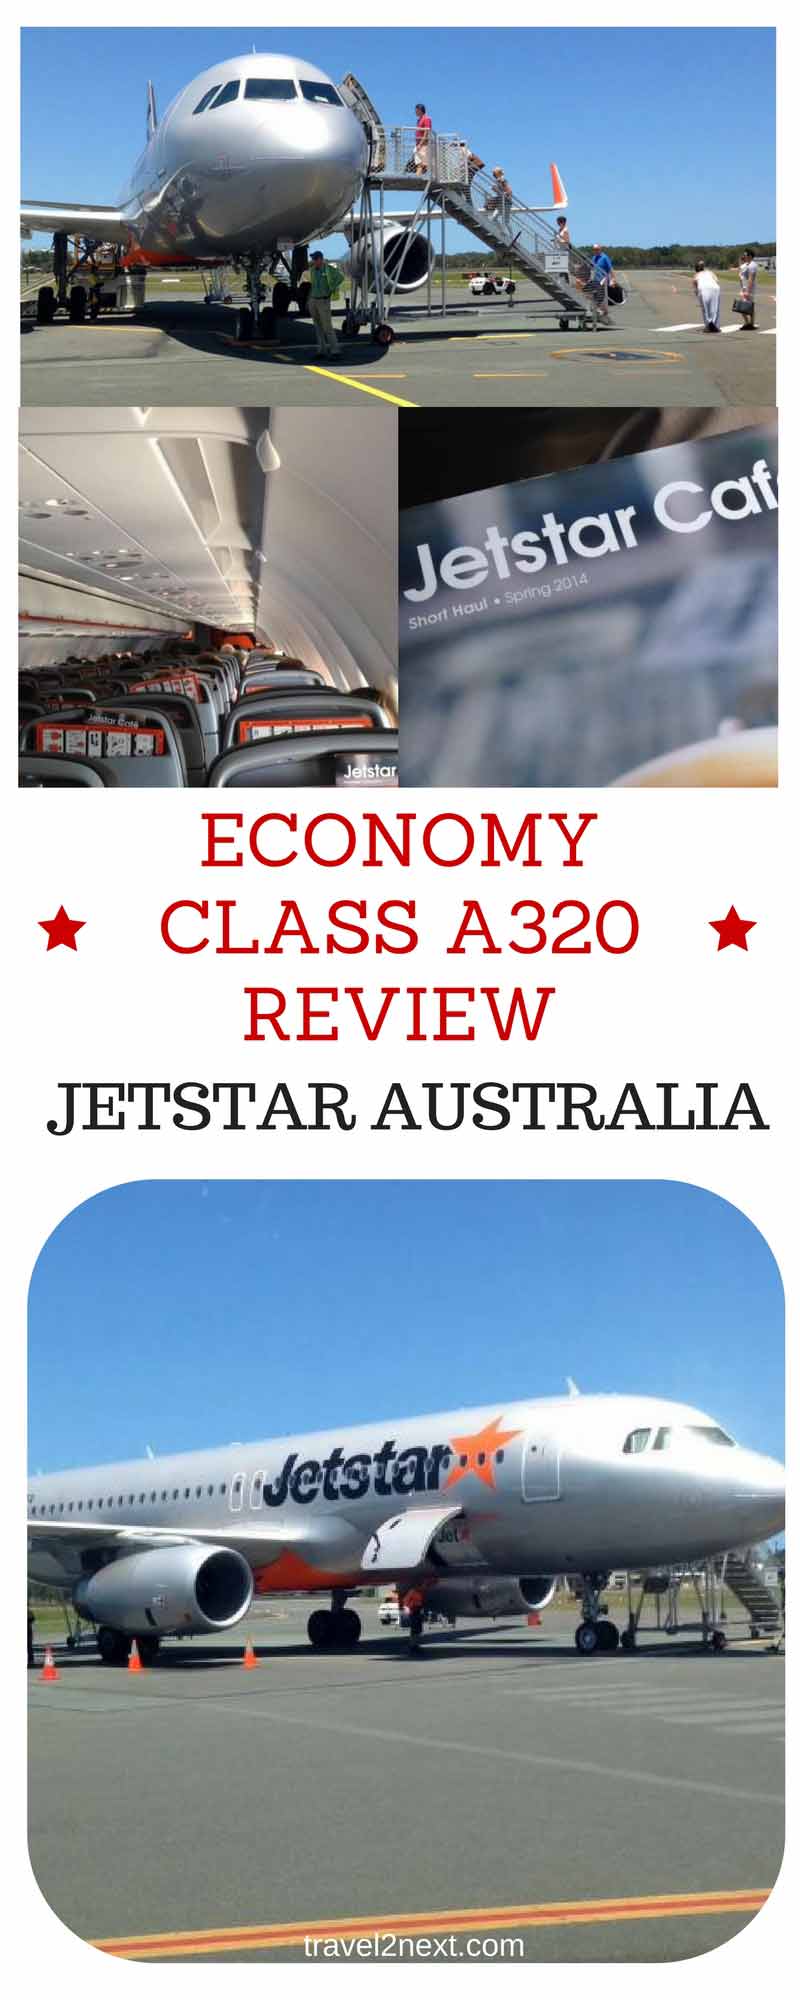 Jetstar Australia